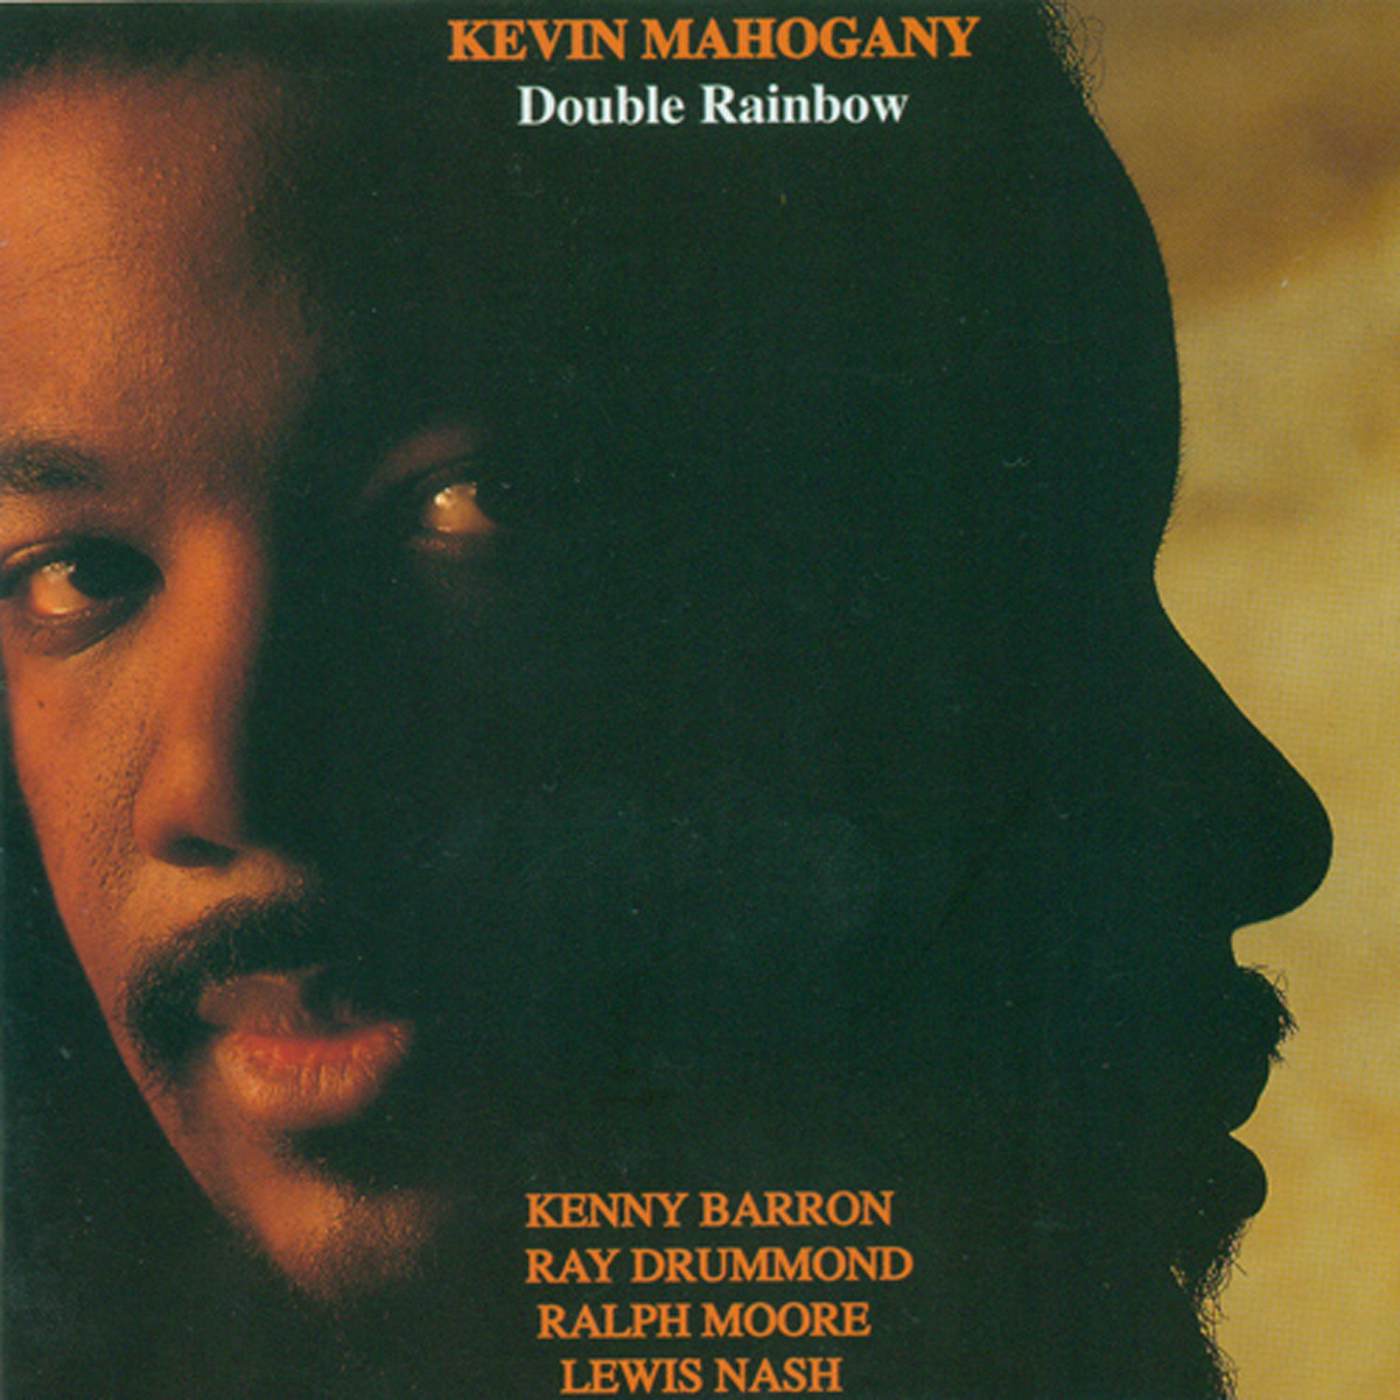 Kevin Mahogany DOUBLE RAINBOW CD